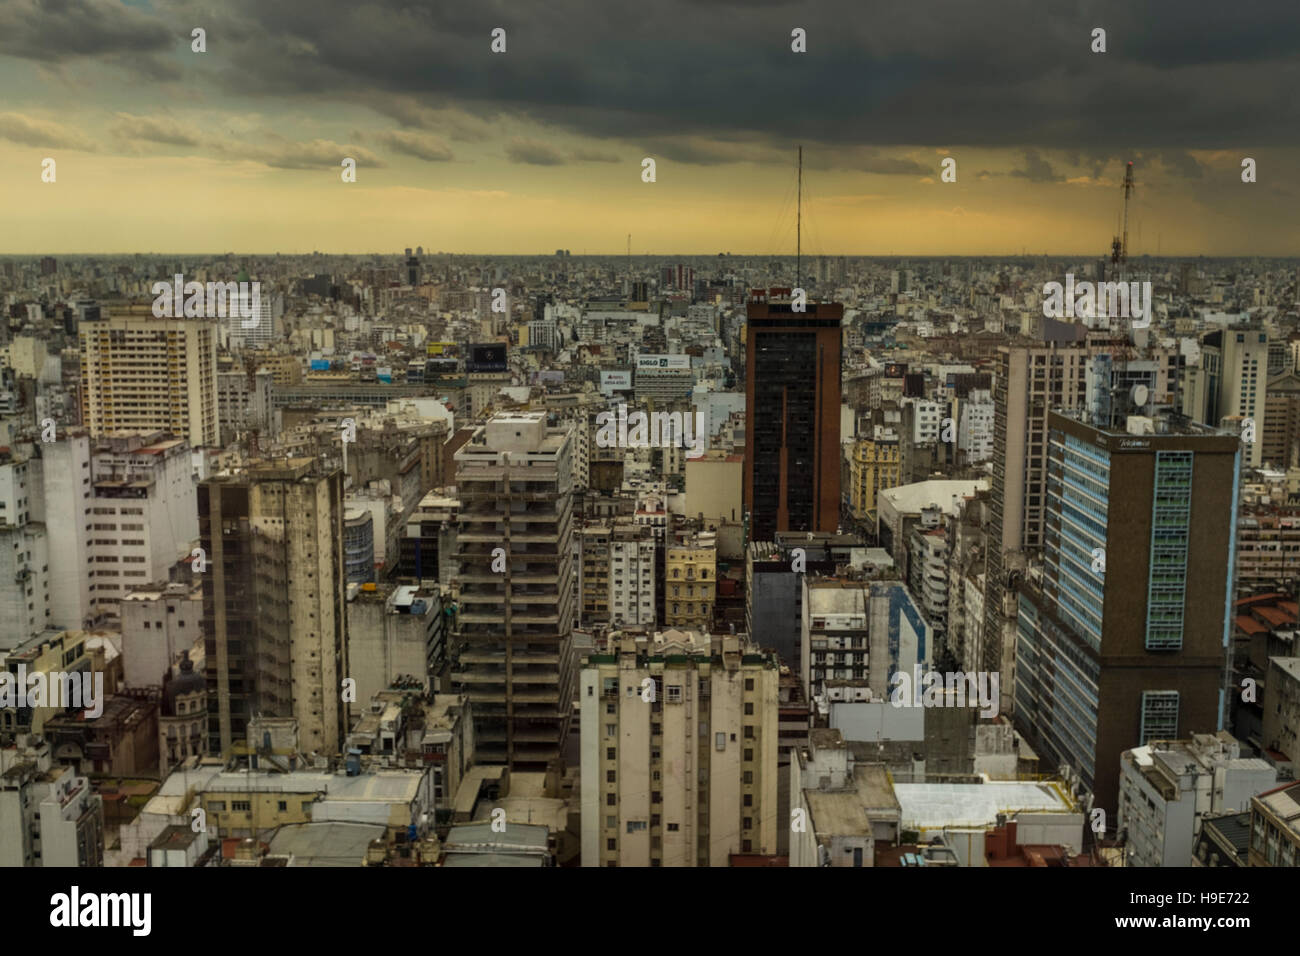 La ciudad de Buenos Aires. Foto de stock